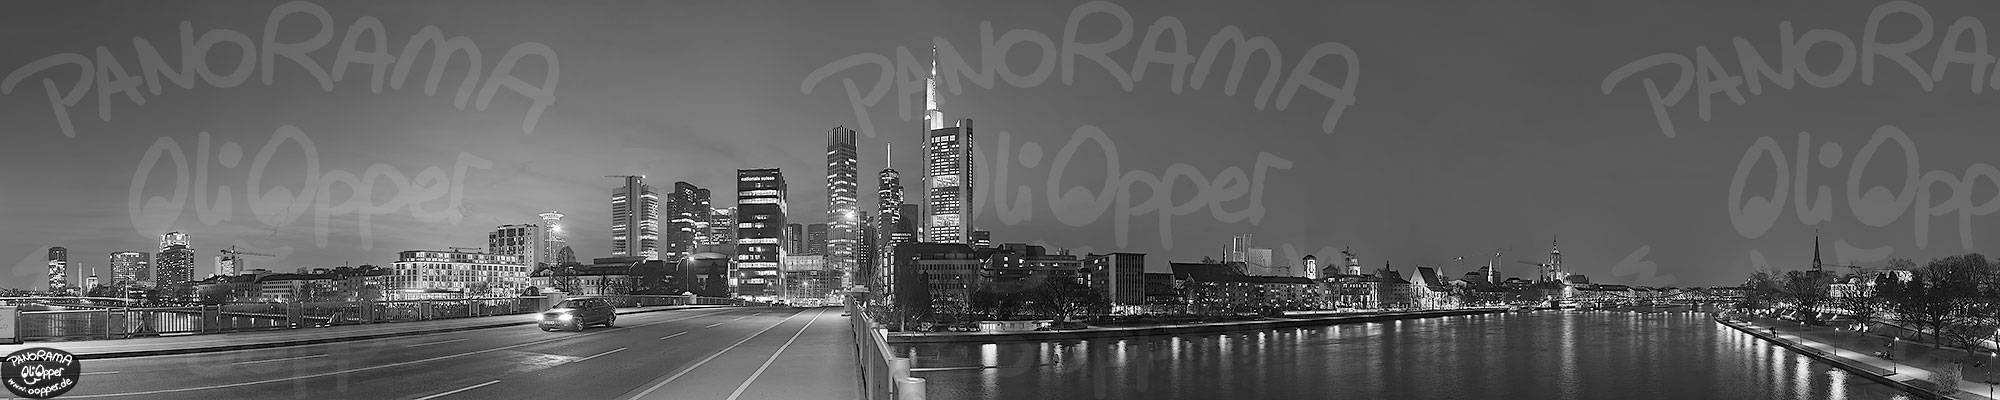 Frankfurt - schwarz/wei - Nacht - p8457 - (c) by Oliver Opper